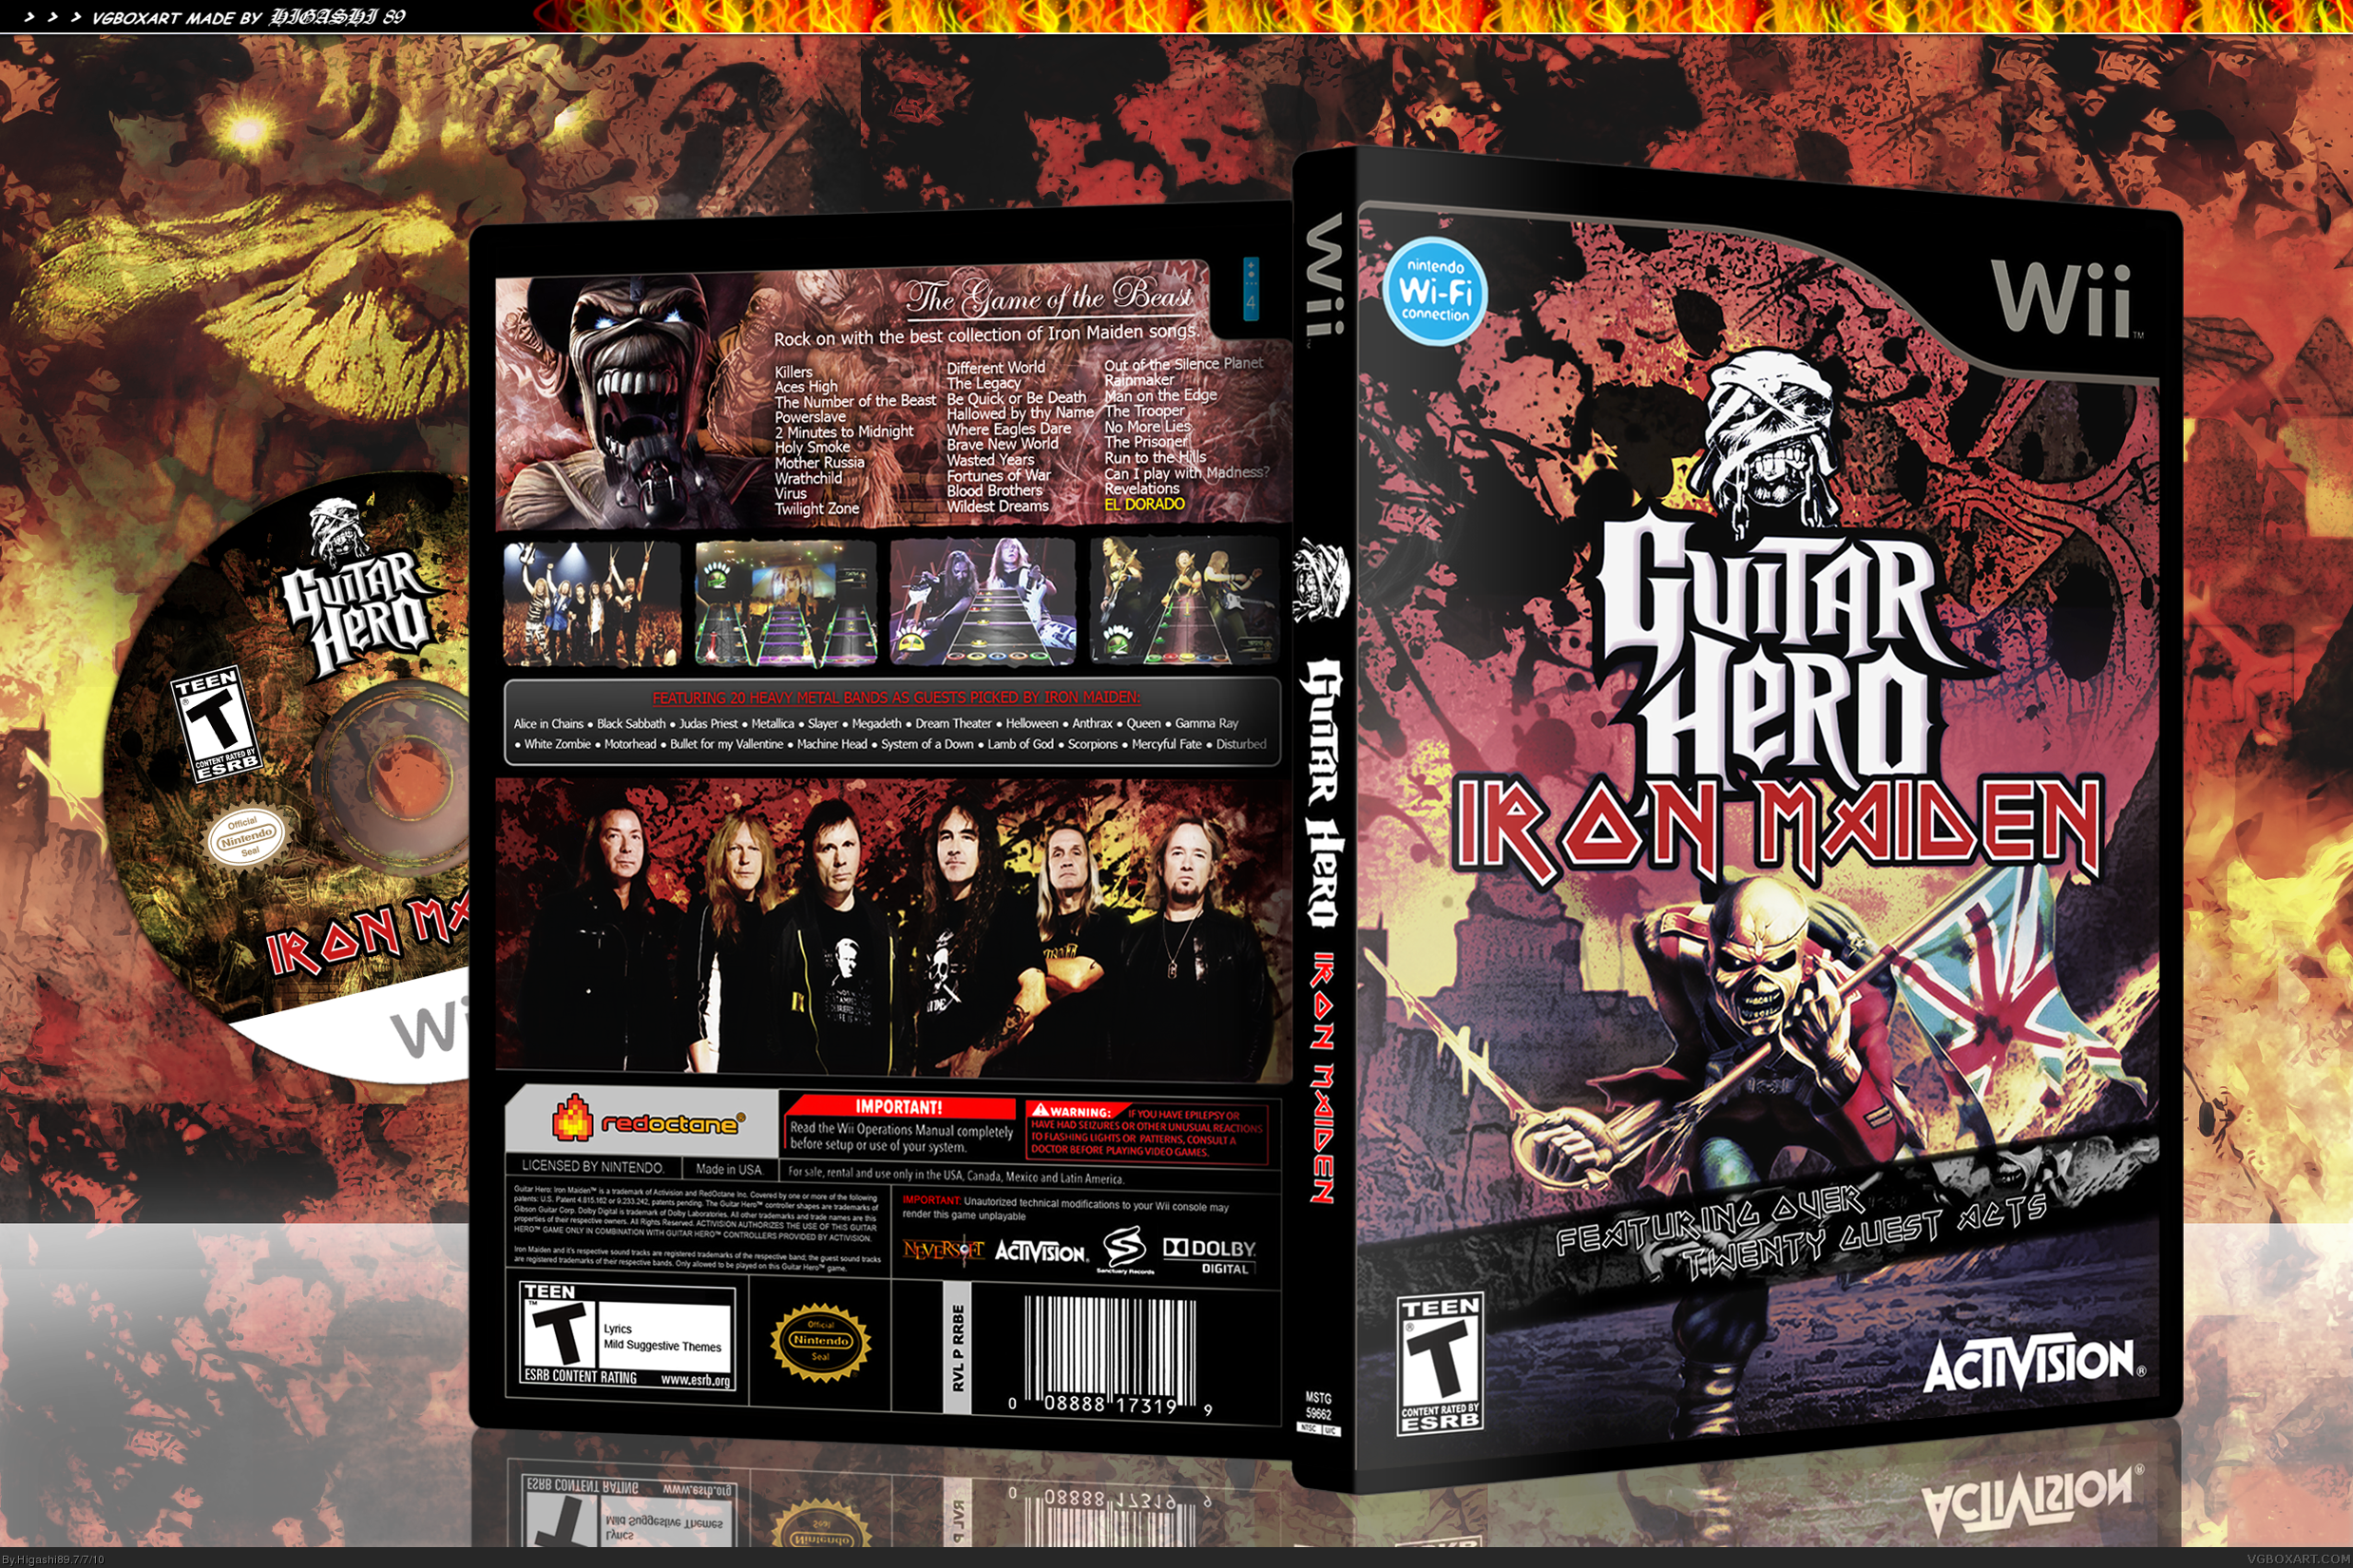 Guitar Hero: Iron Maiden box cover